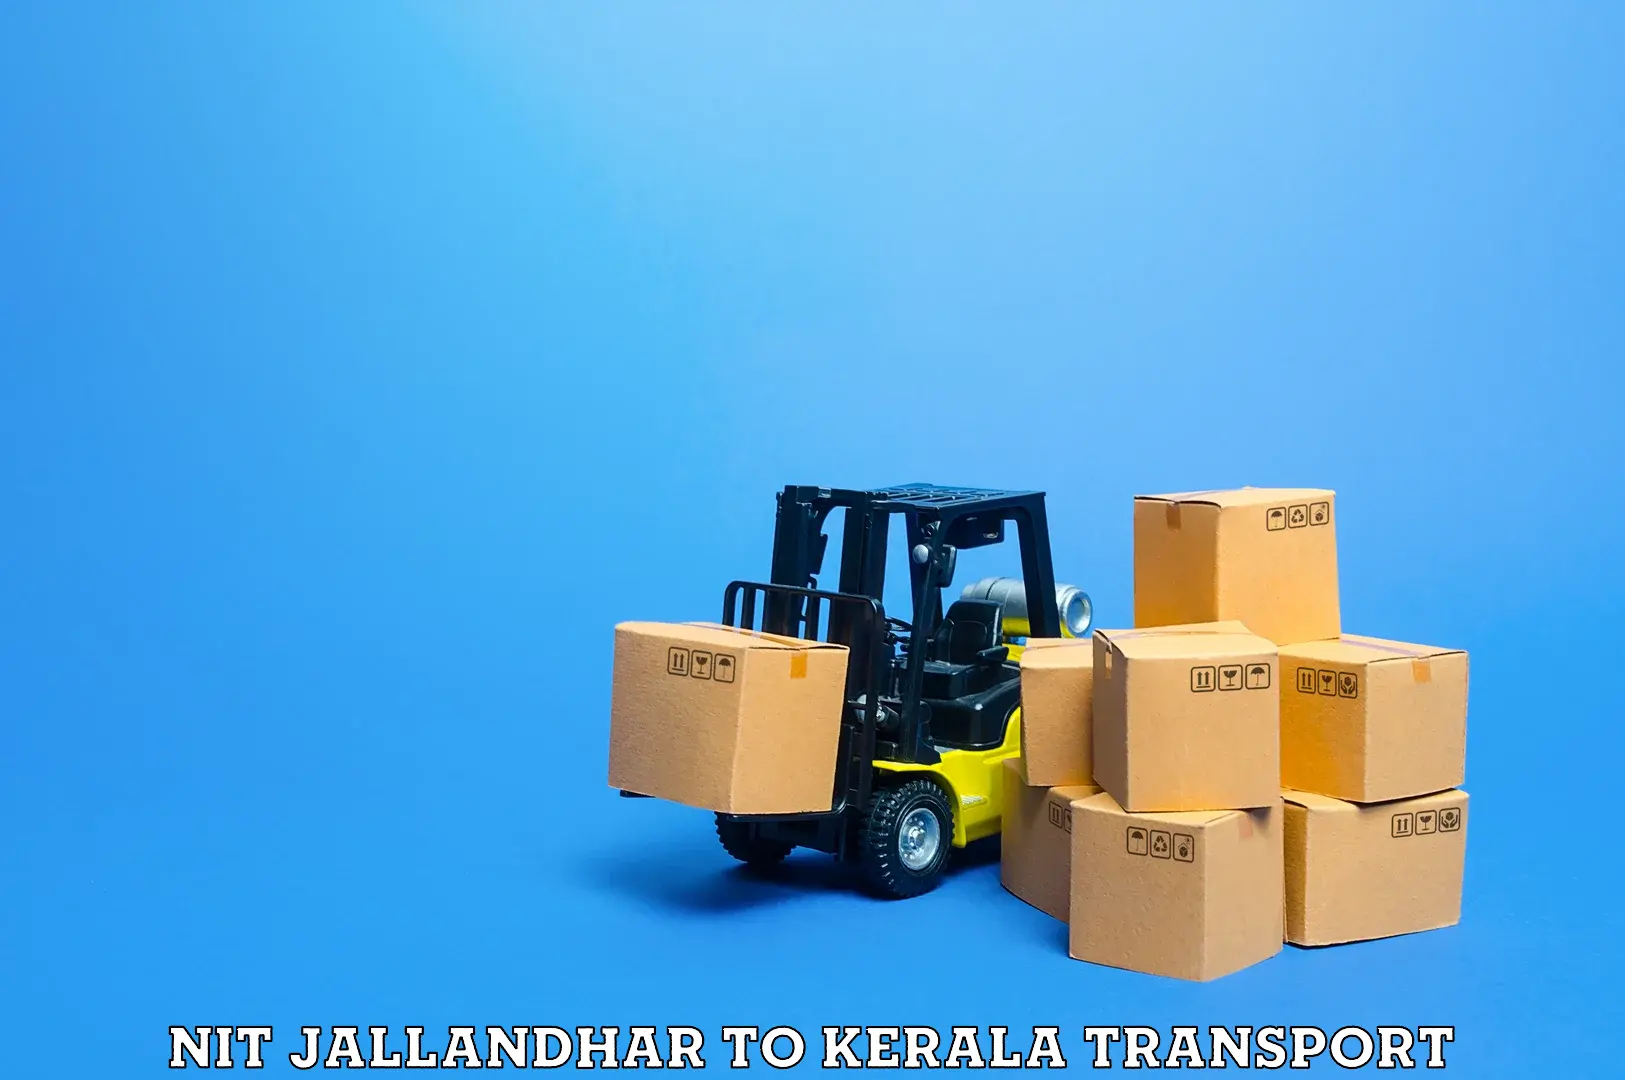 Lorry transport service NIT Jallandhar to Tiruvalla